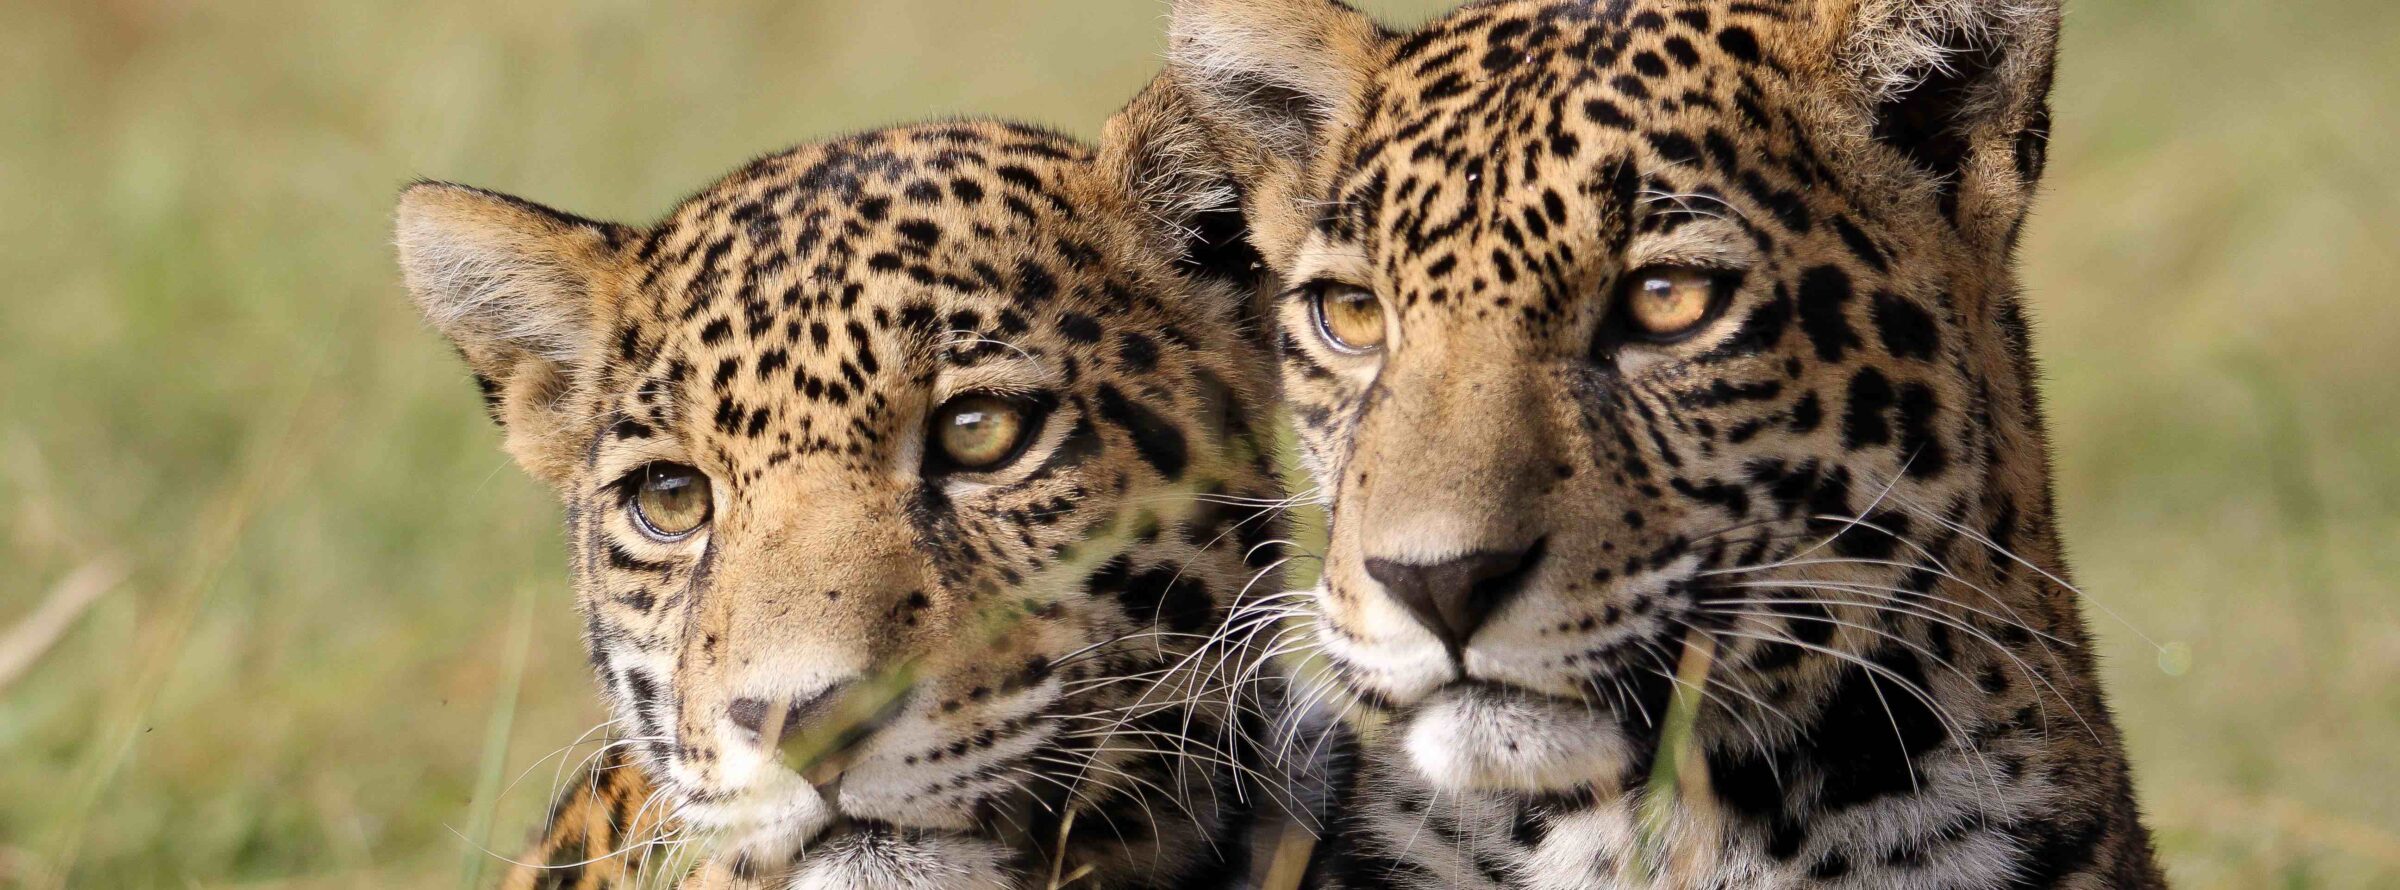 Escuela para jaguares: el santuario donde se les enseña habilidades para retornar a la vida silvestre en México